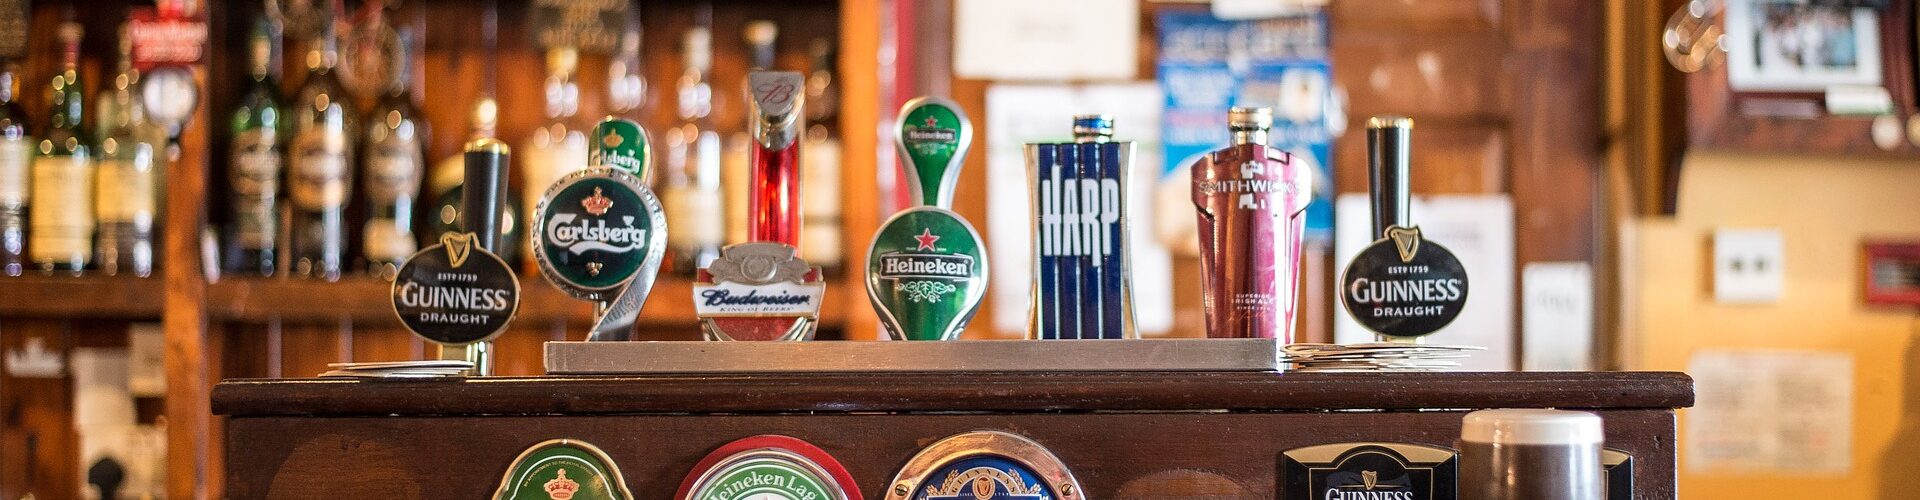 Imagem ilustrativa de um bar com diversos tipos de cerveja, de várias cores.